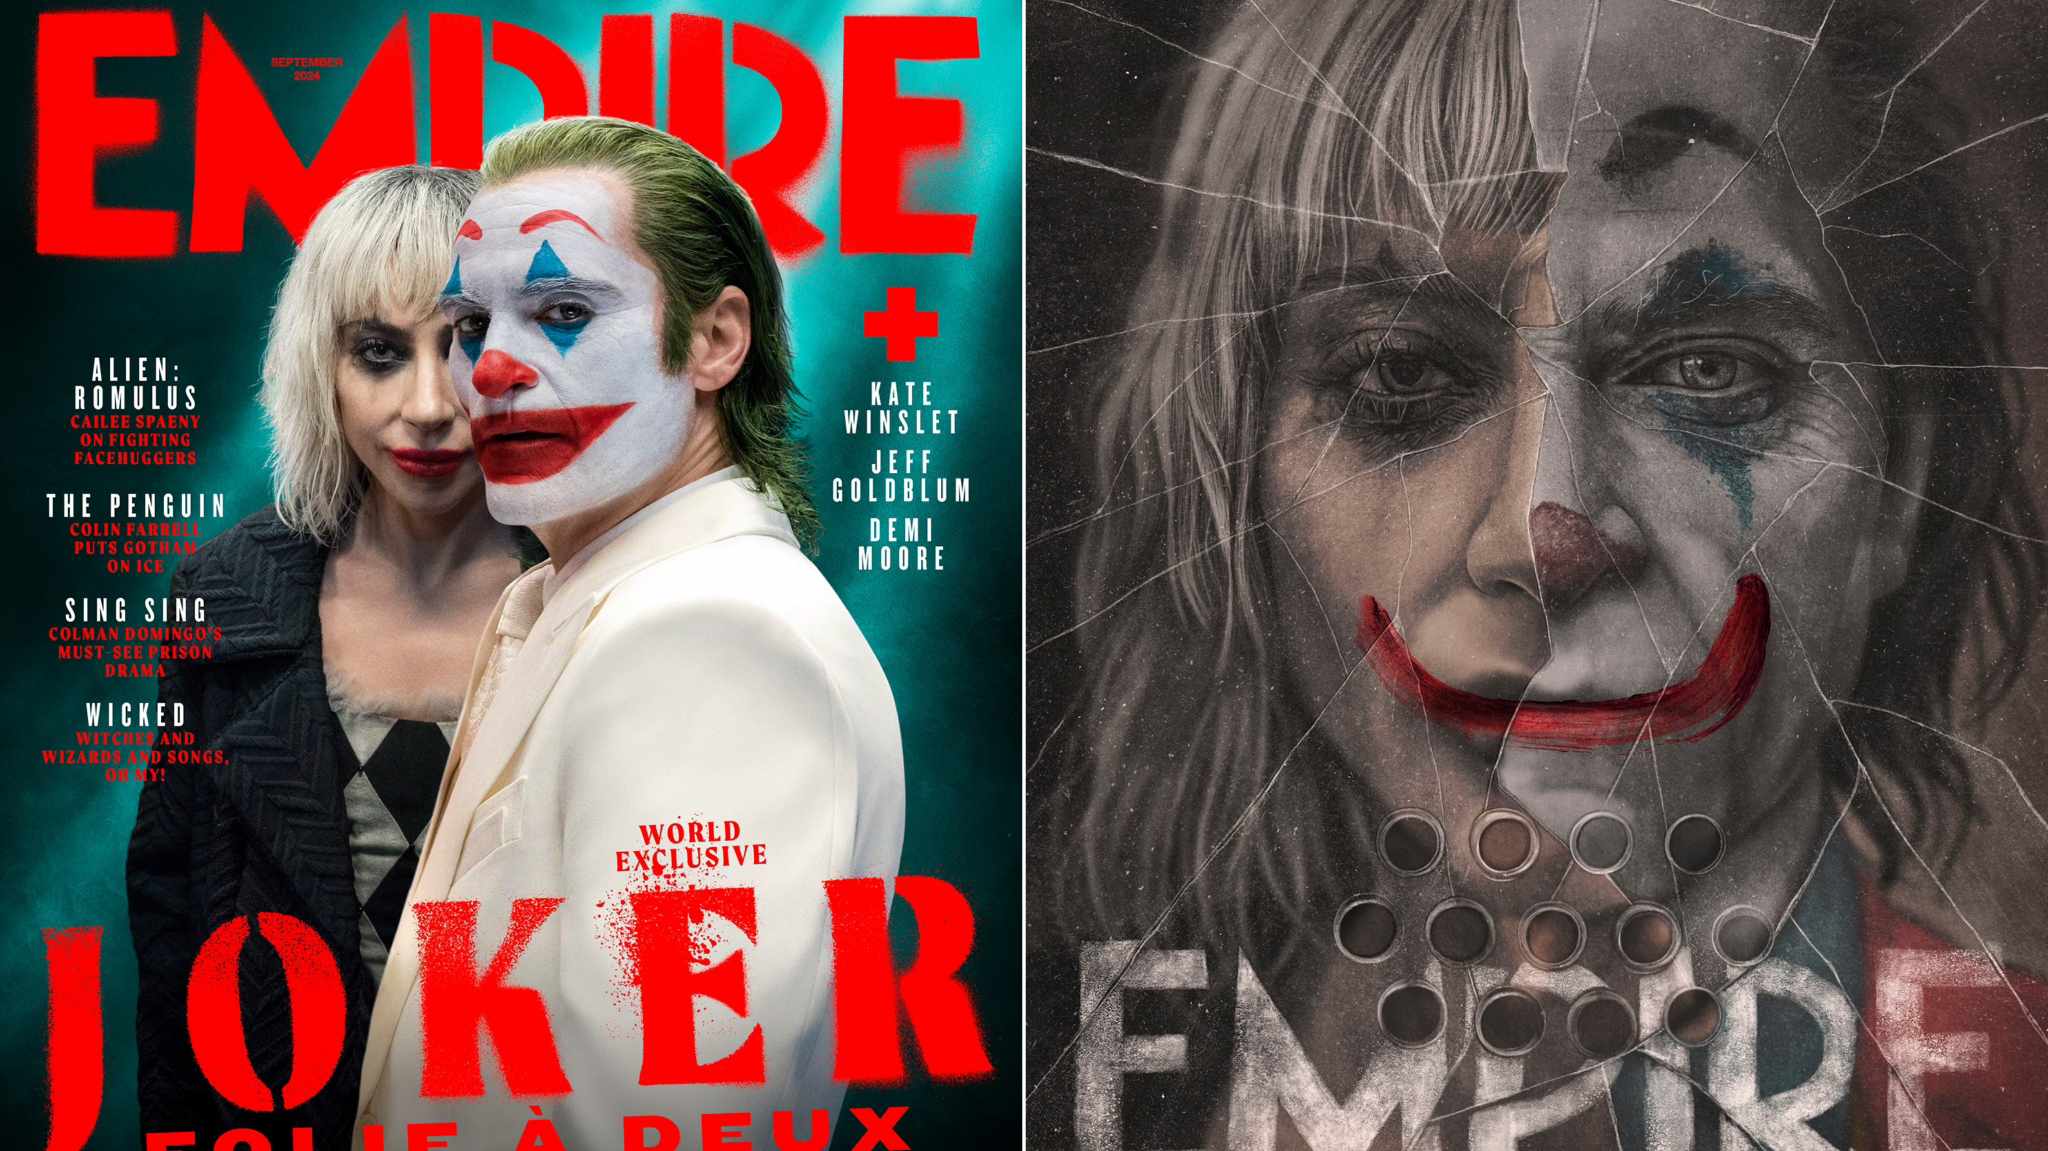 Joker: Folie à Deux protagonista delle copertine del nuovo numero di Empire Magazine